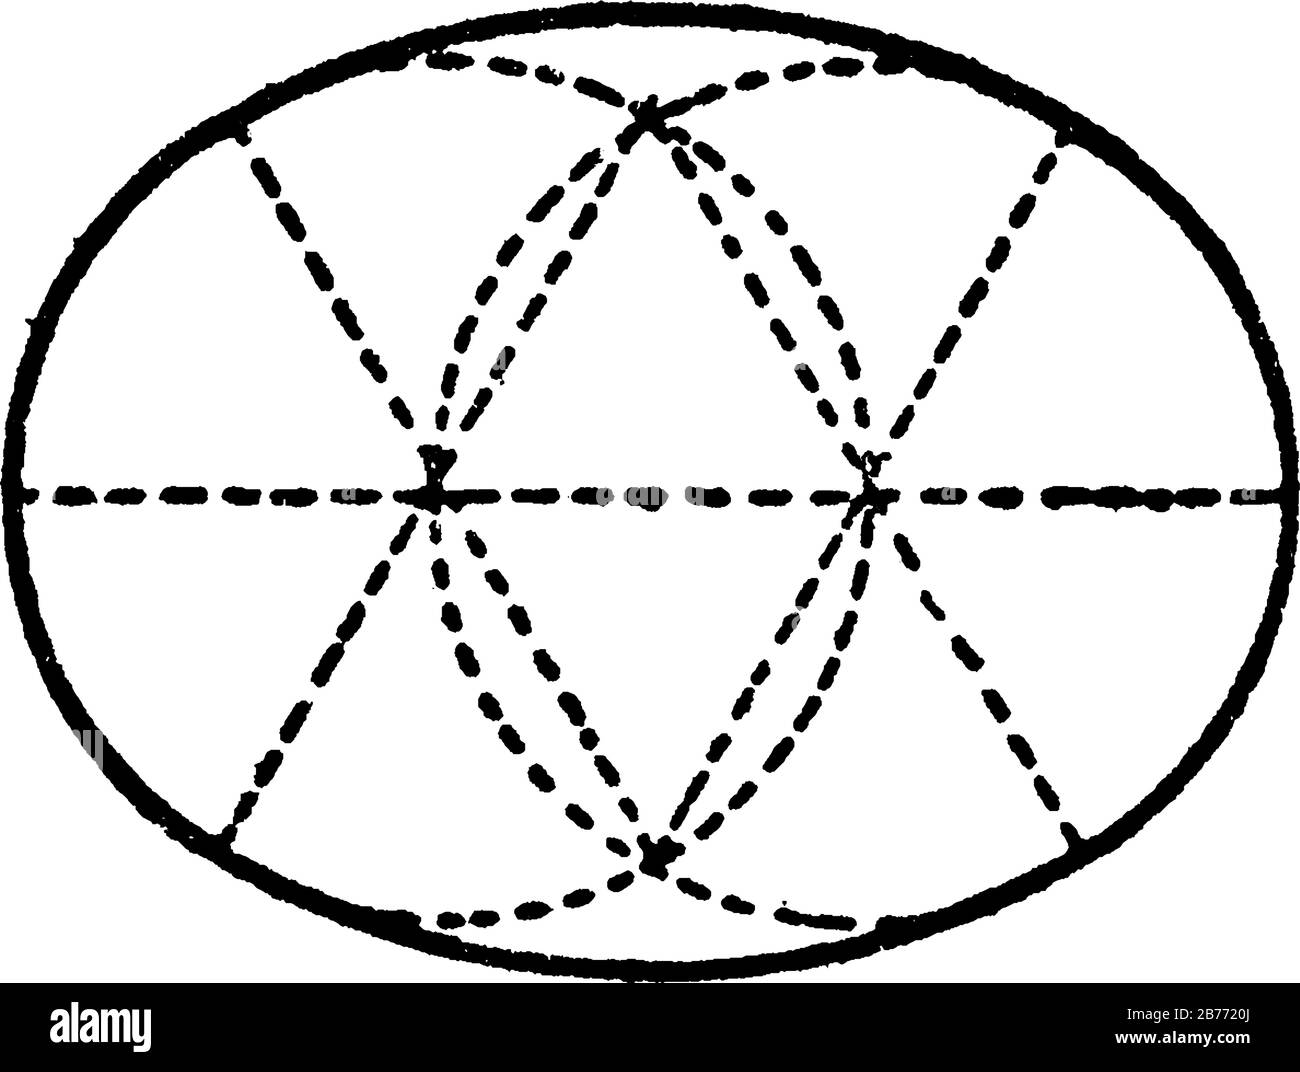 Costruzione di un'ellisse mediante archi di cerchio, il punto in cui due cerchi si intersecano è il centro degli archi tangenti delle ellissi, Illustrazione Vettoriale